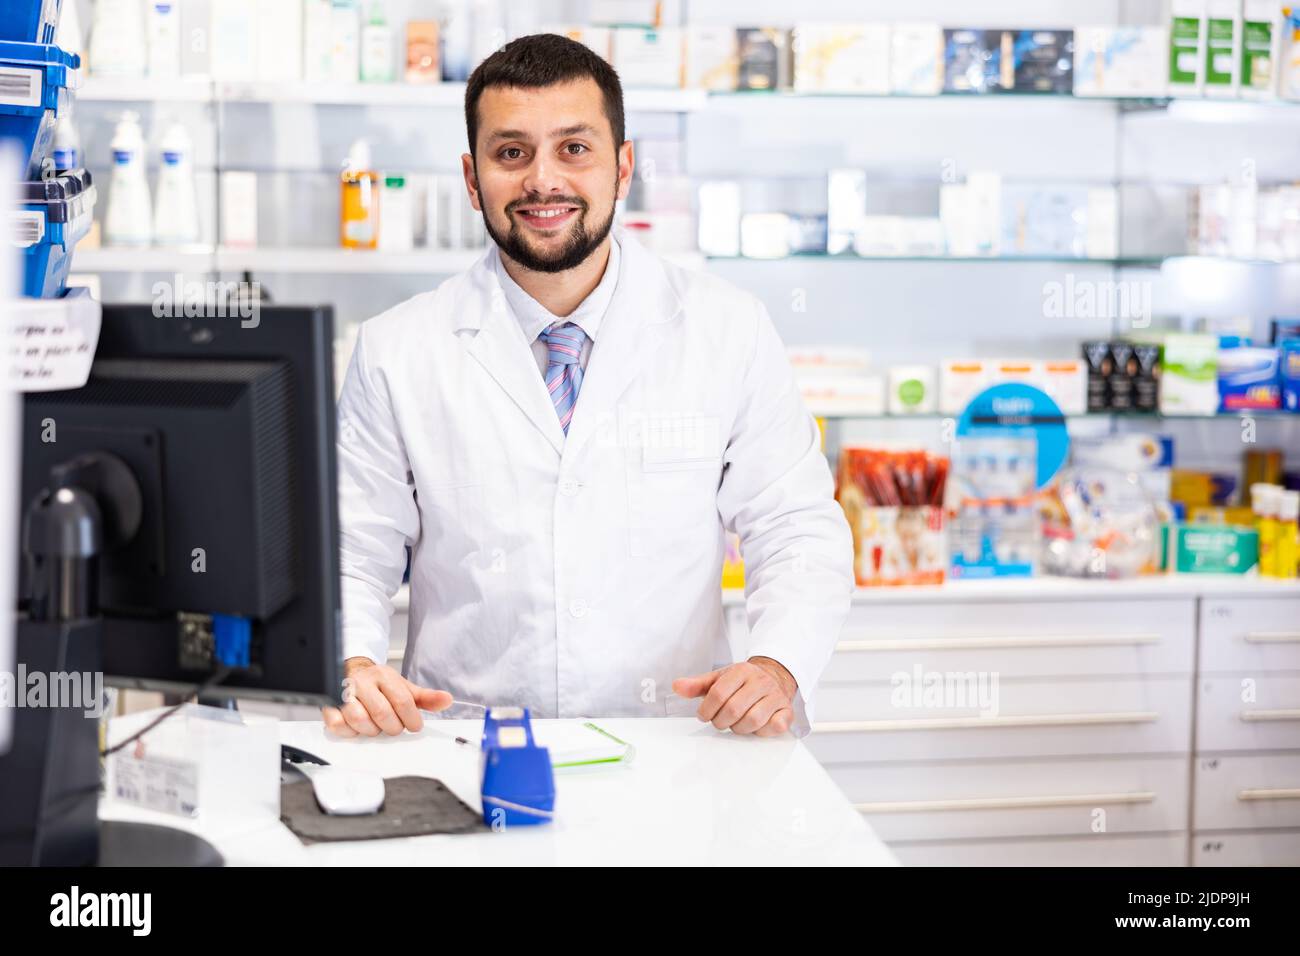 Ritratto di farmacista maschile che lavora al registratore di cassa in farmacia Foto Stock